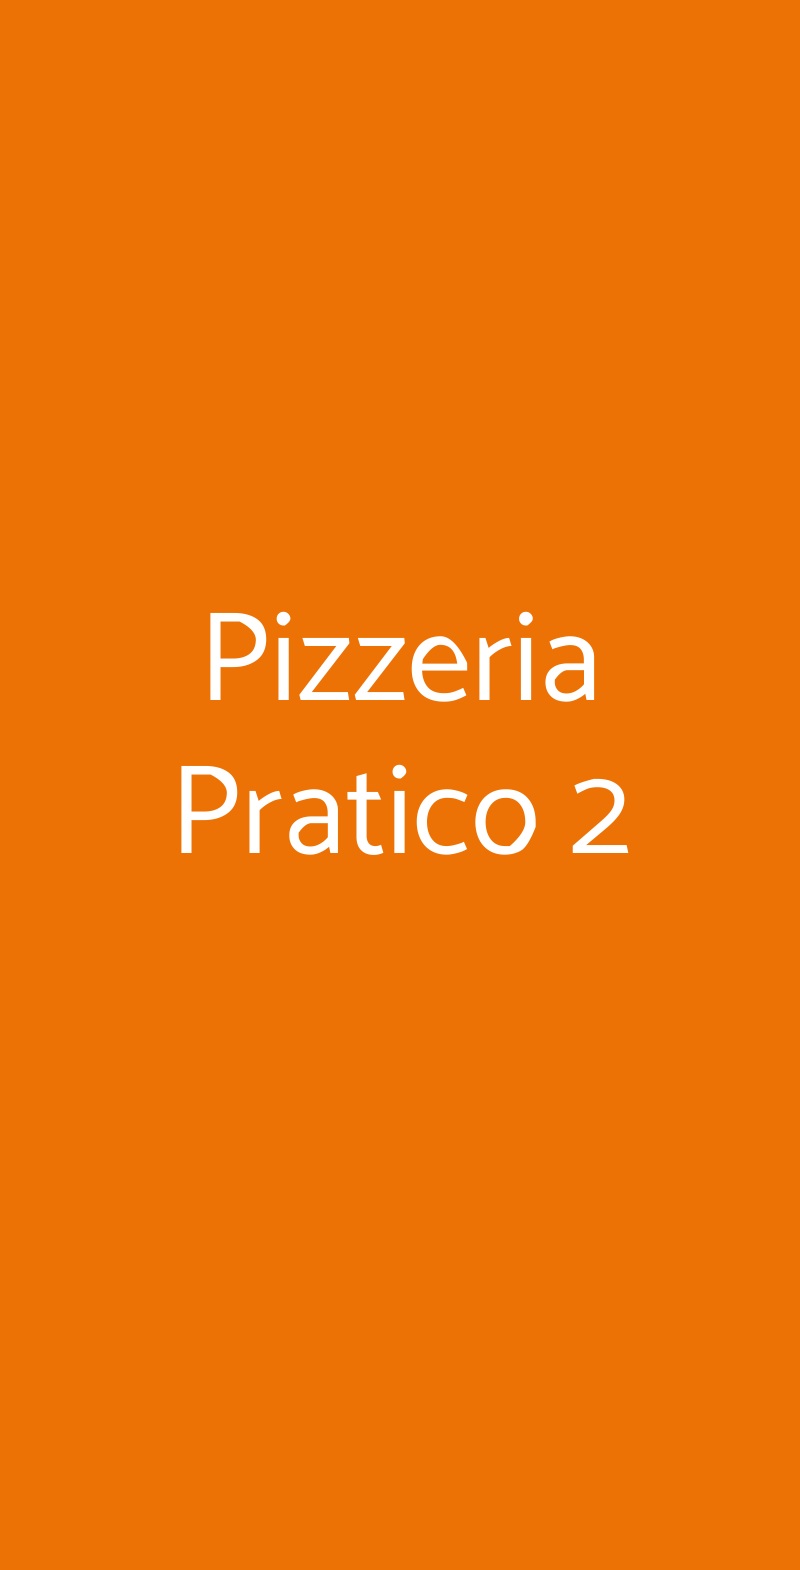 Pizzeria Pratico 2 Torino menù 1 pagina